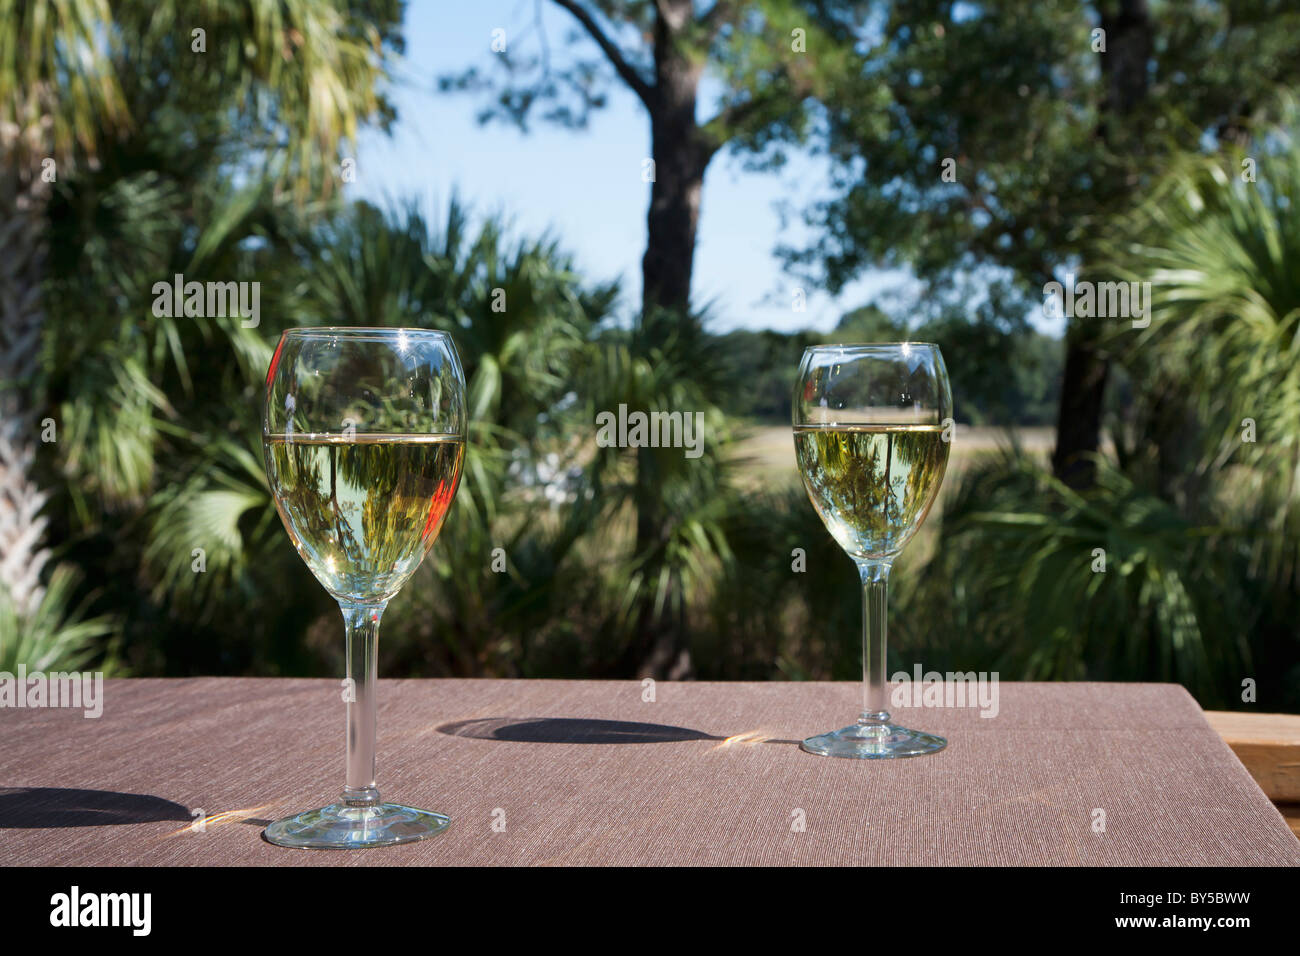 Due bicchieri di vino bianco su una tabella, all'aperto Foto Stock